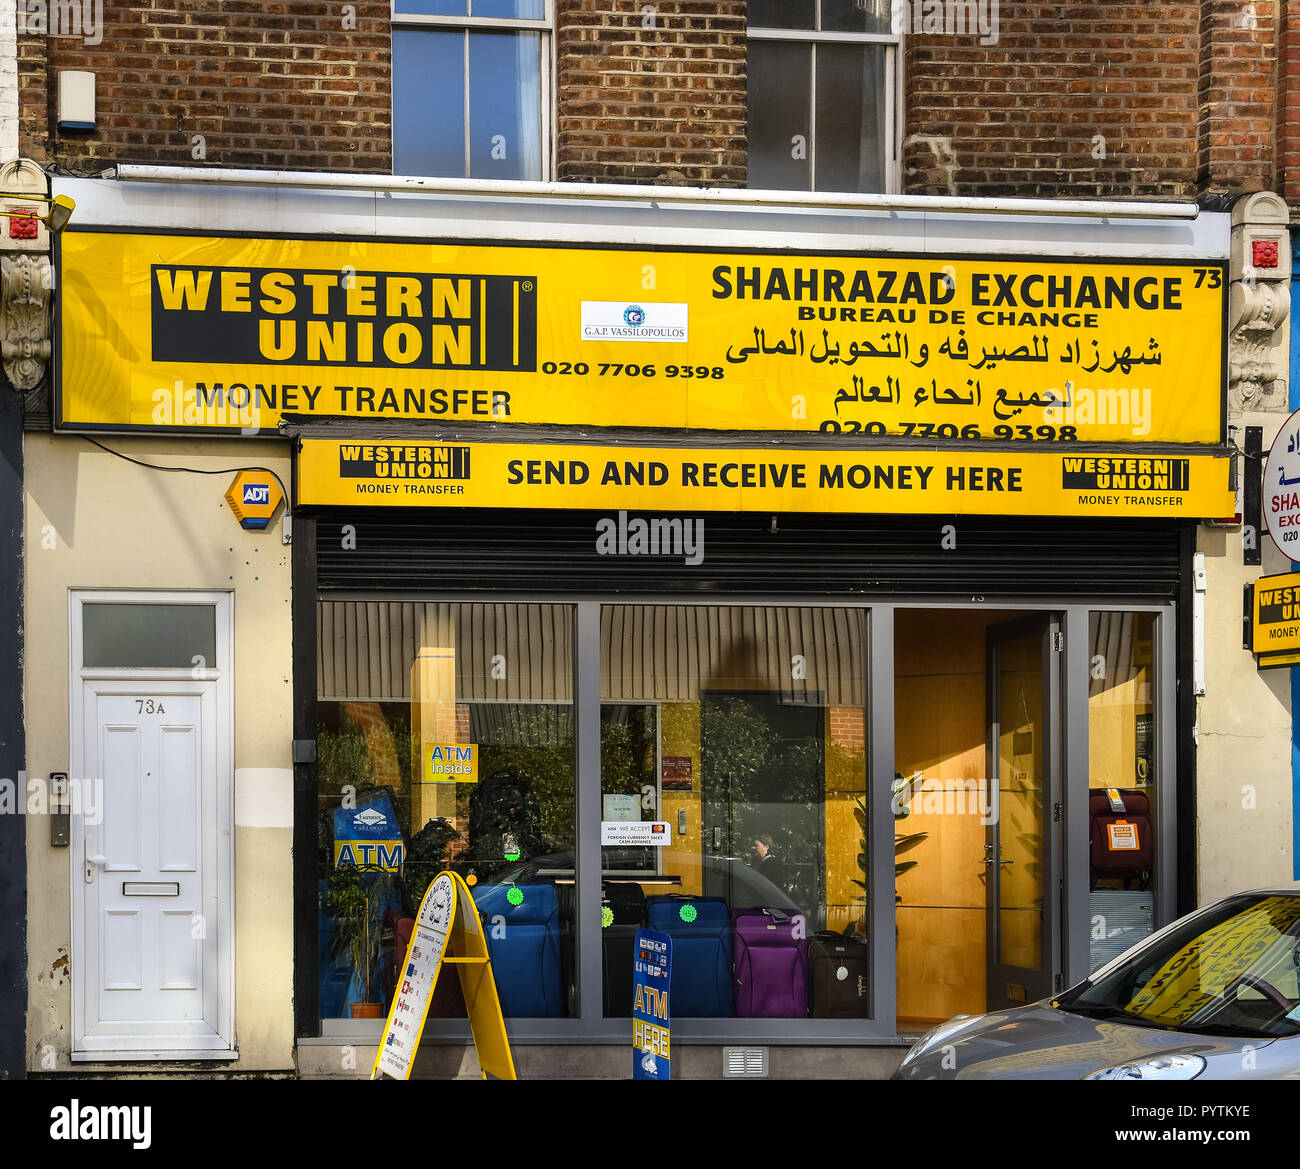 London, United Kingdom - October 18 2018: The Frontage of Western Union and  Shahrazad Exchange bureau on Praed St Stock Photo - Alamy